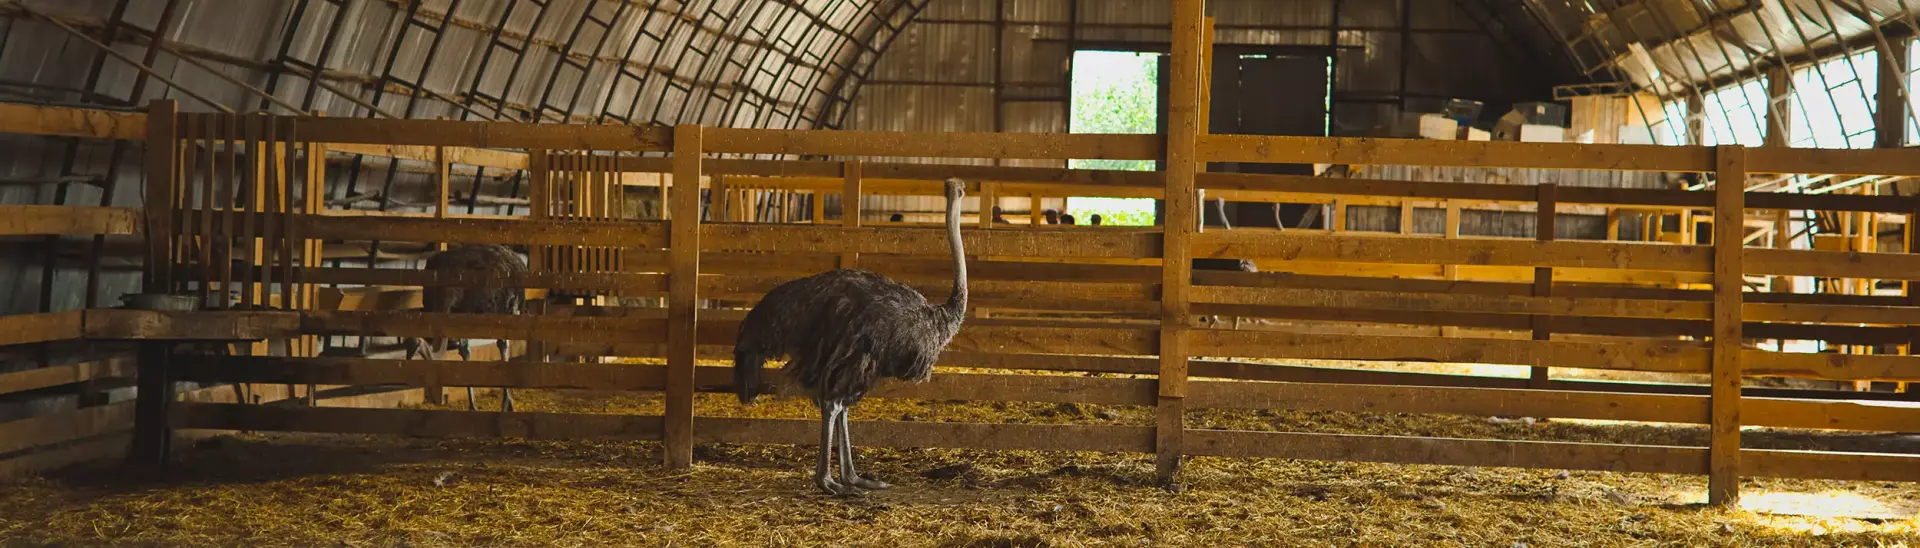 Страусиная ферма «Тюменский страус»